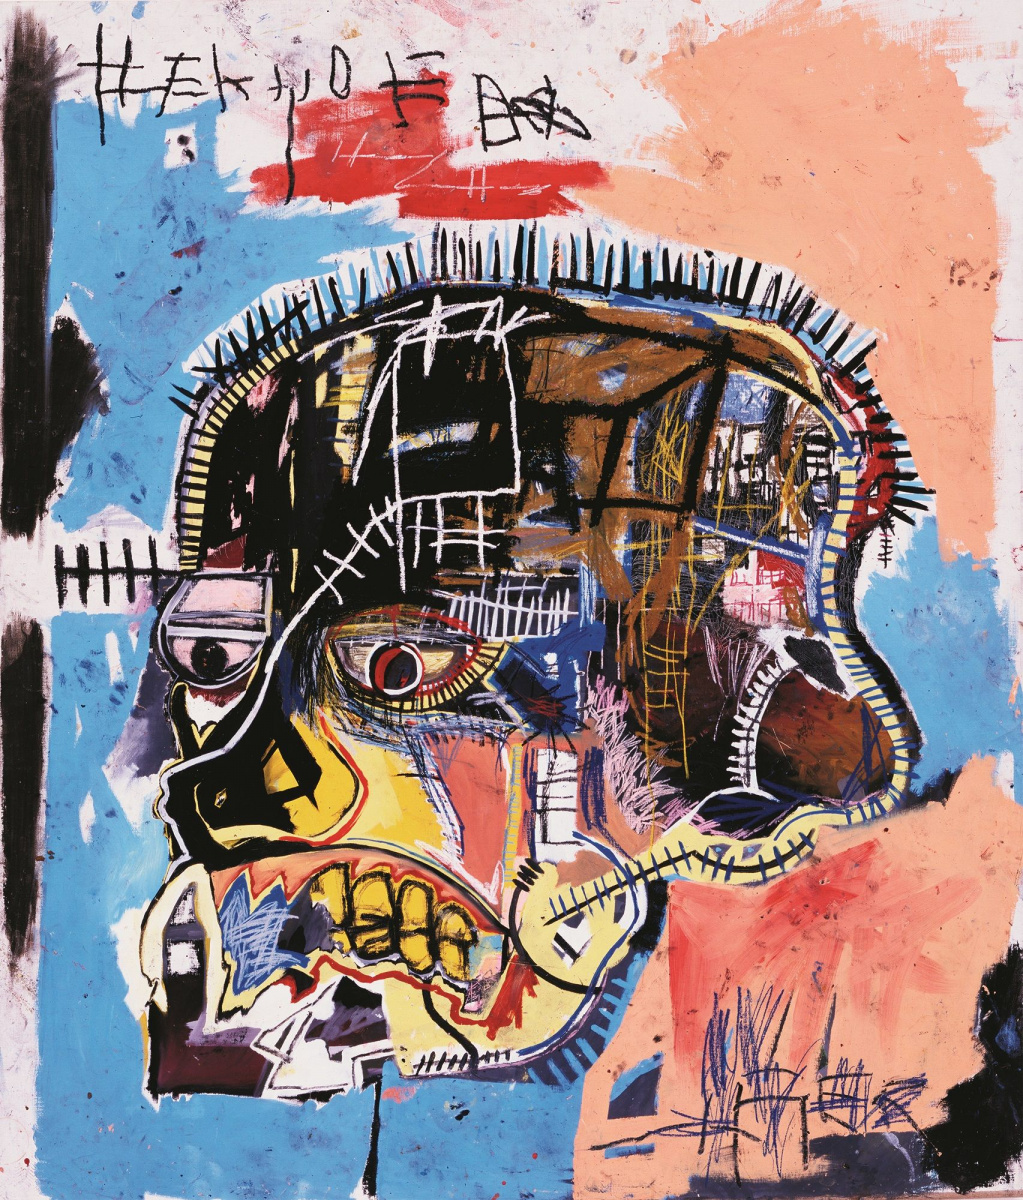 # 永遠停留 27 歲，卻成為藝術史上最貴：塗鴉傳奇 Jean-Michel Basquiat 談名氣的影響 1